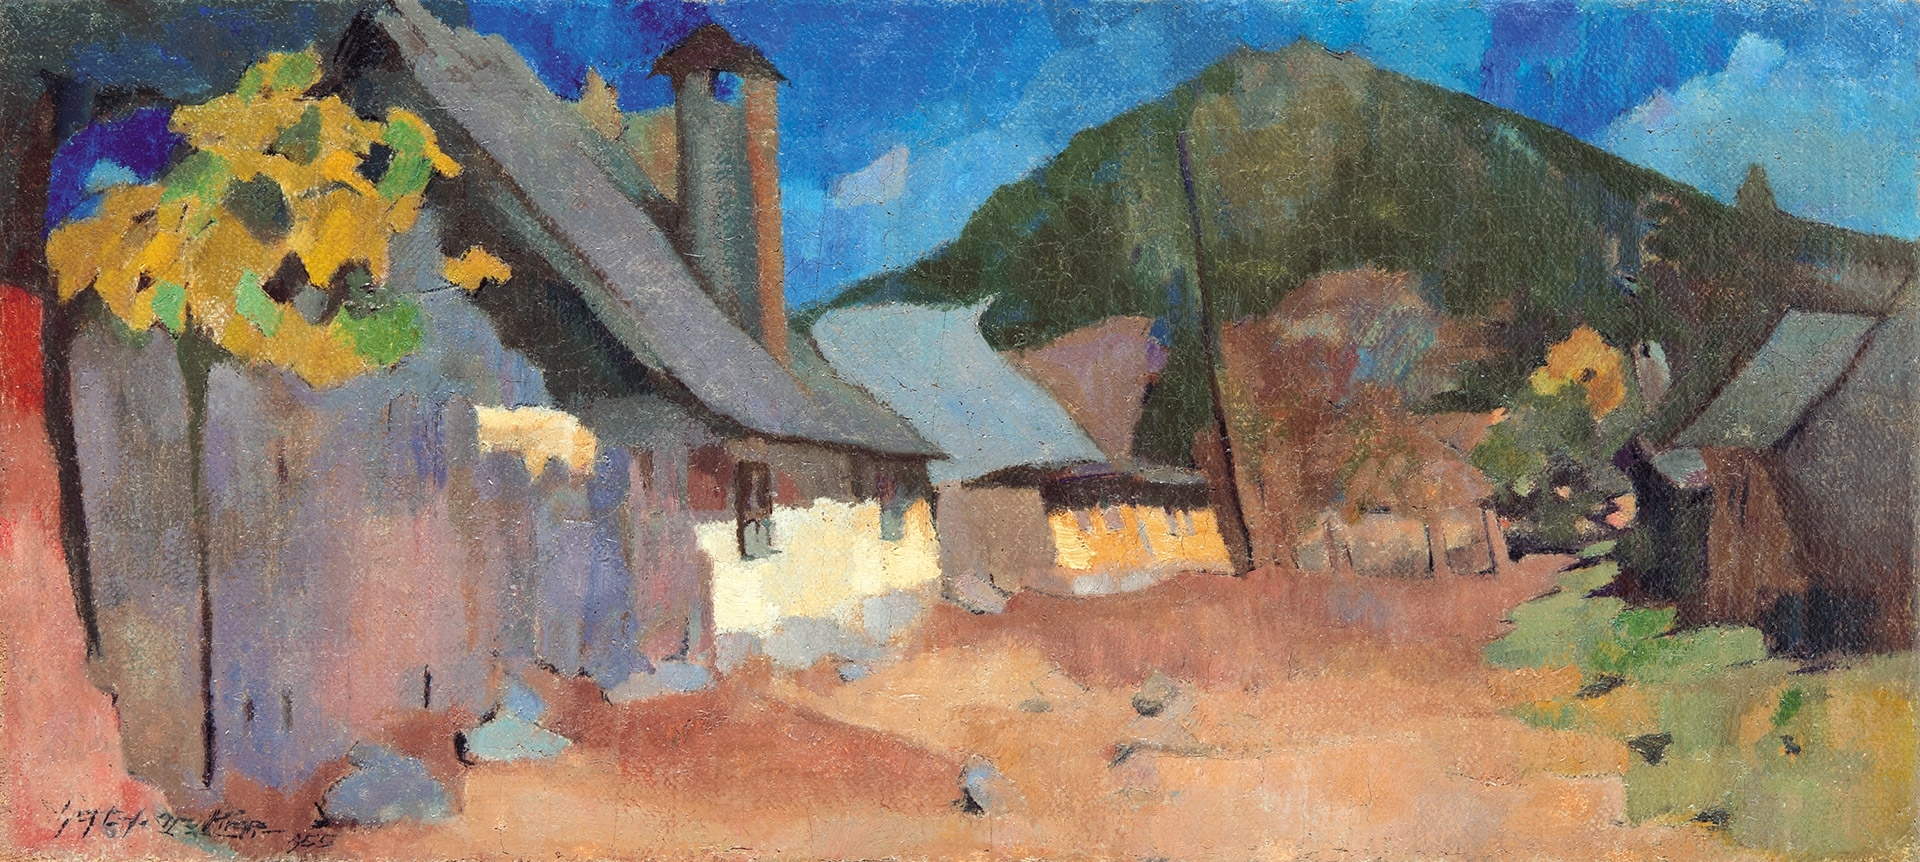 Nagy Oszkár (1883-1965) Sunlit Houses